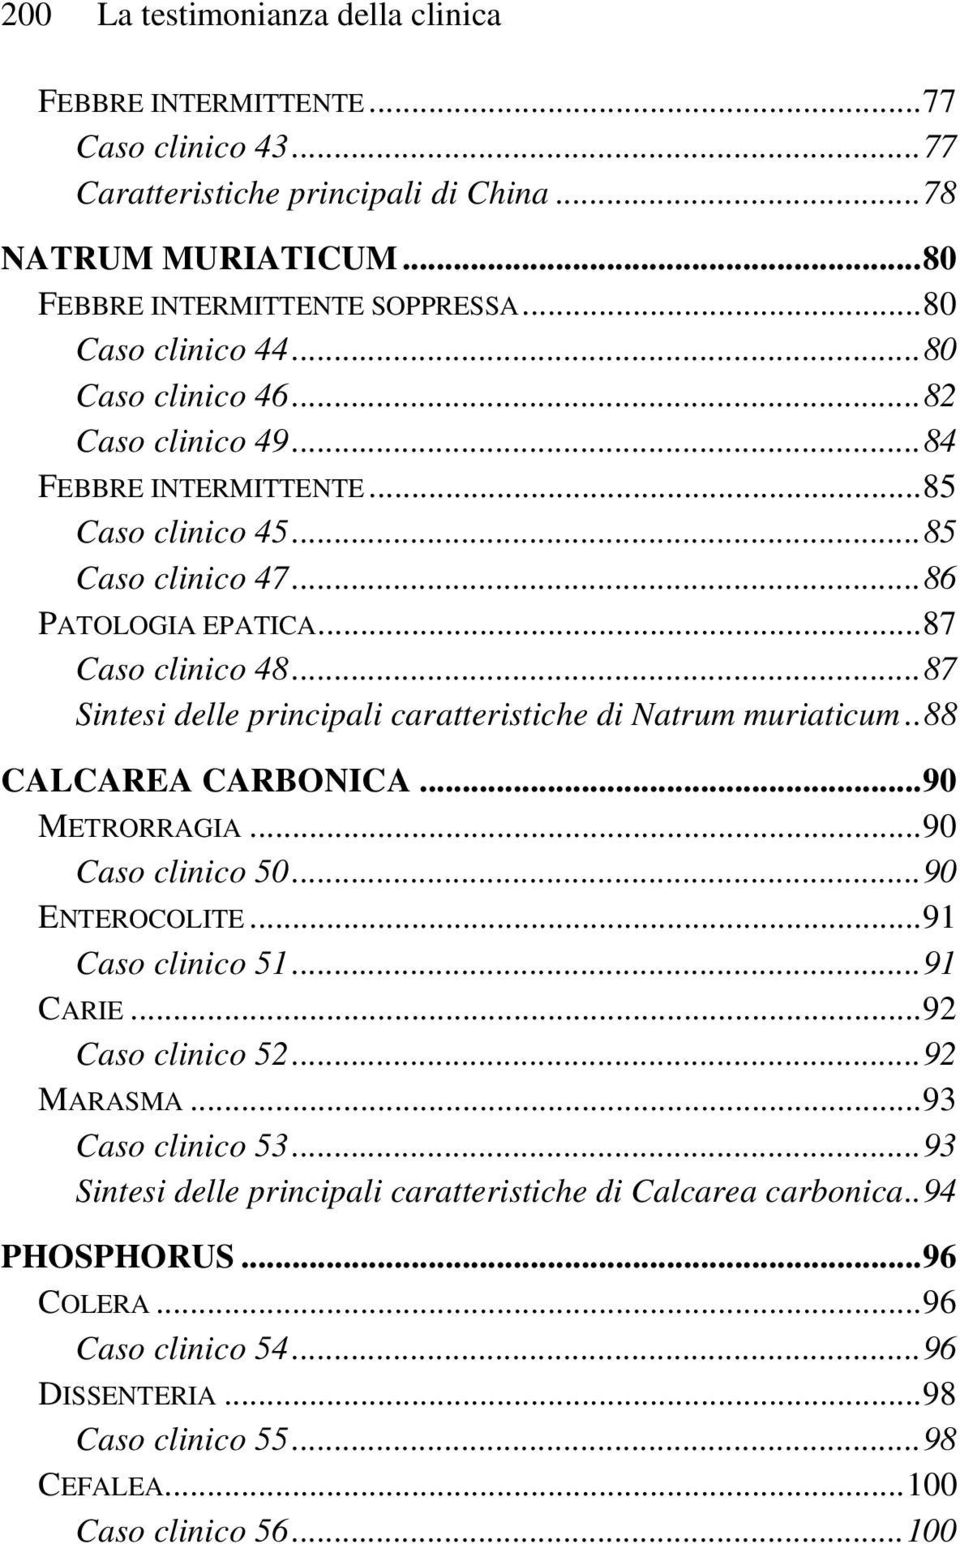 ..87 Sintesi delle principali caratteristiche di Natrum muriaticum..88 CALCAREA CARBONICA...90 METRORRAGIA...90 Caso clinico 50...90 ENTEROCOLITE...91 Caso clinico 51...91 CARIE.